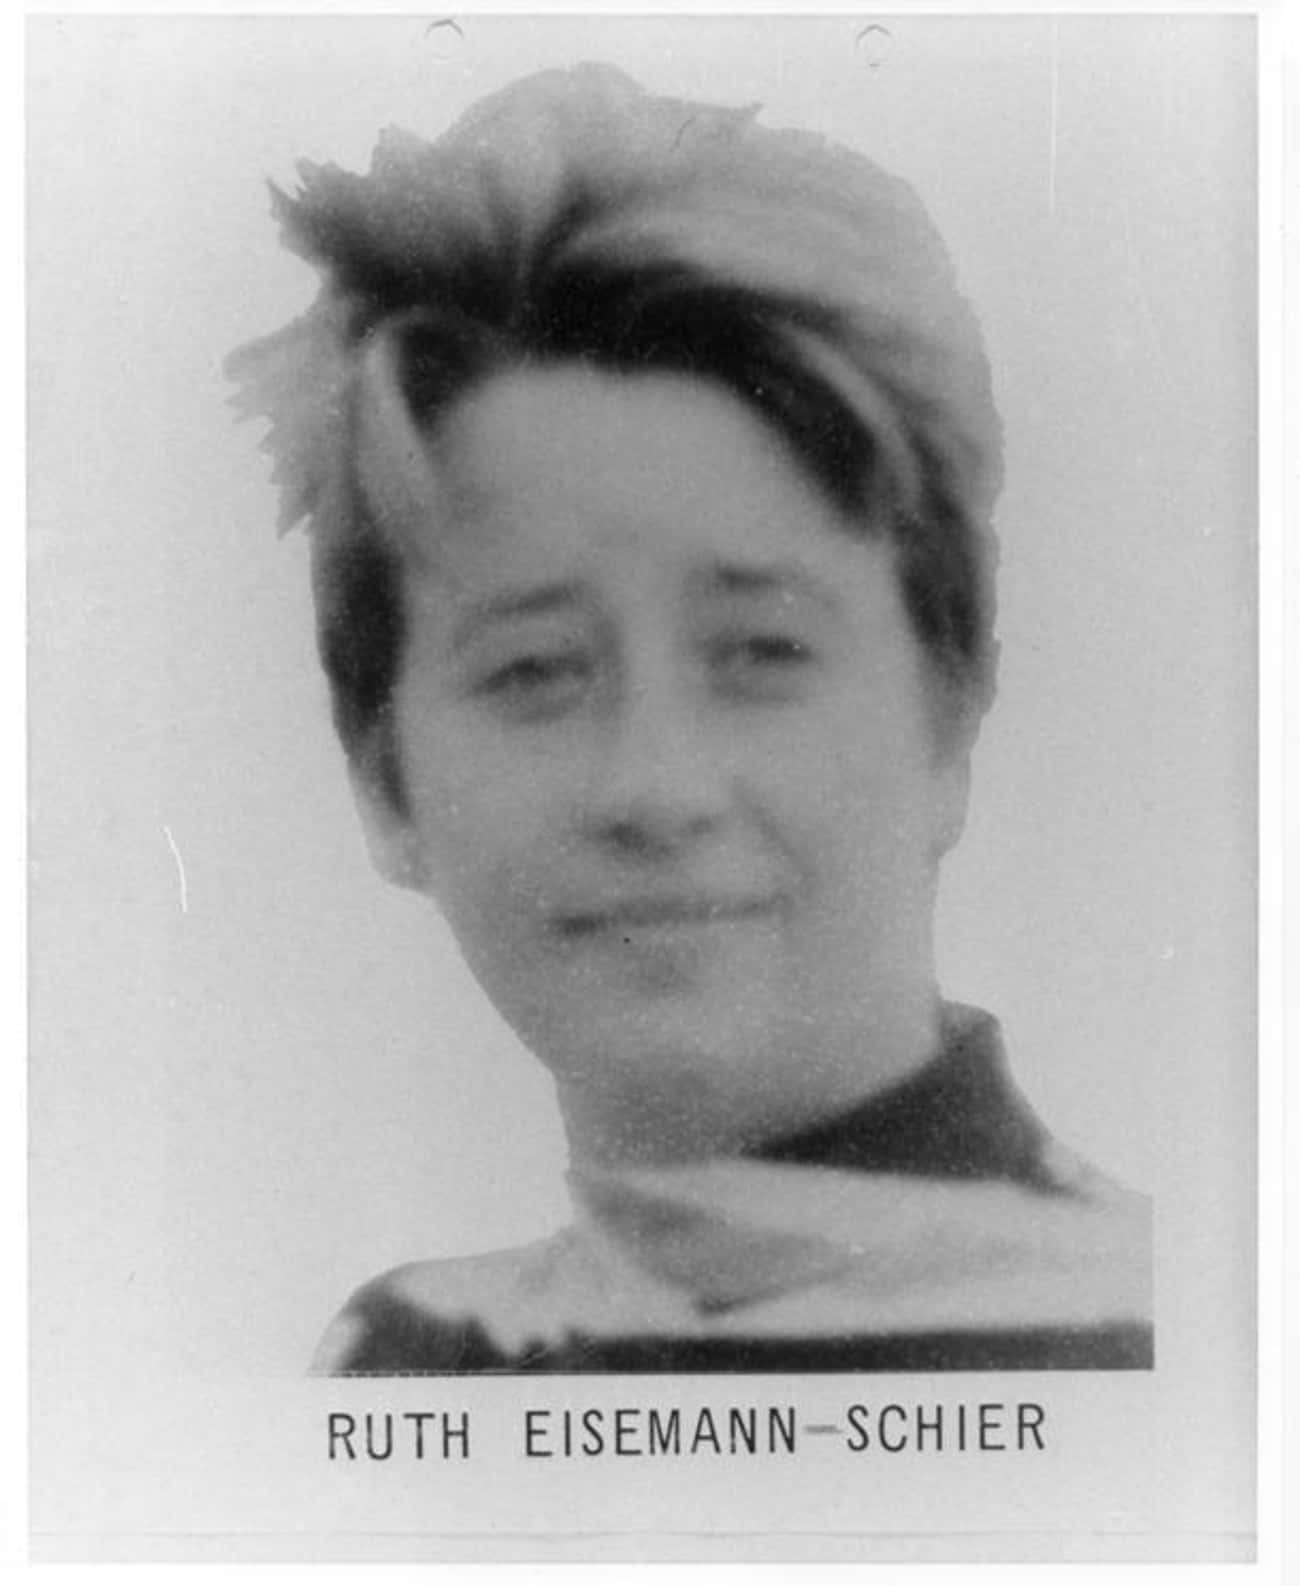 Ruth Eisemann-Schier: Added 12/28/1968, Arrested 3/5/1969